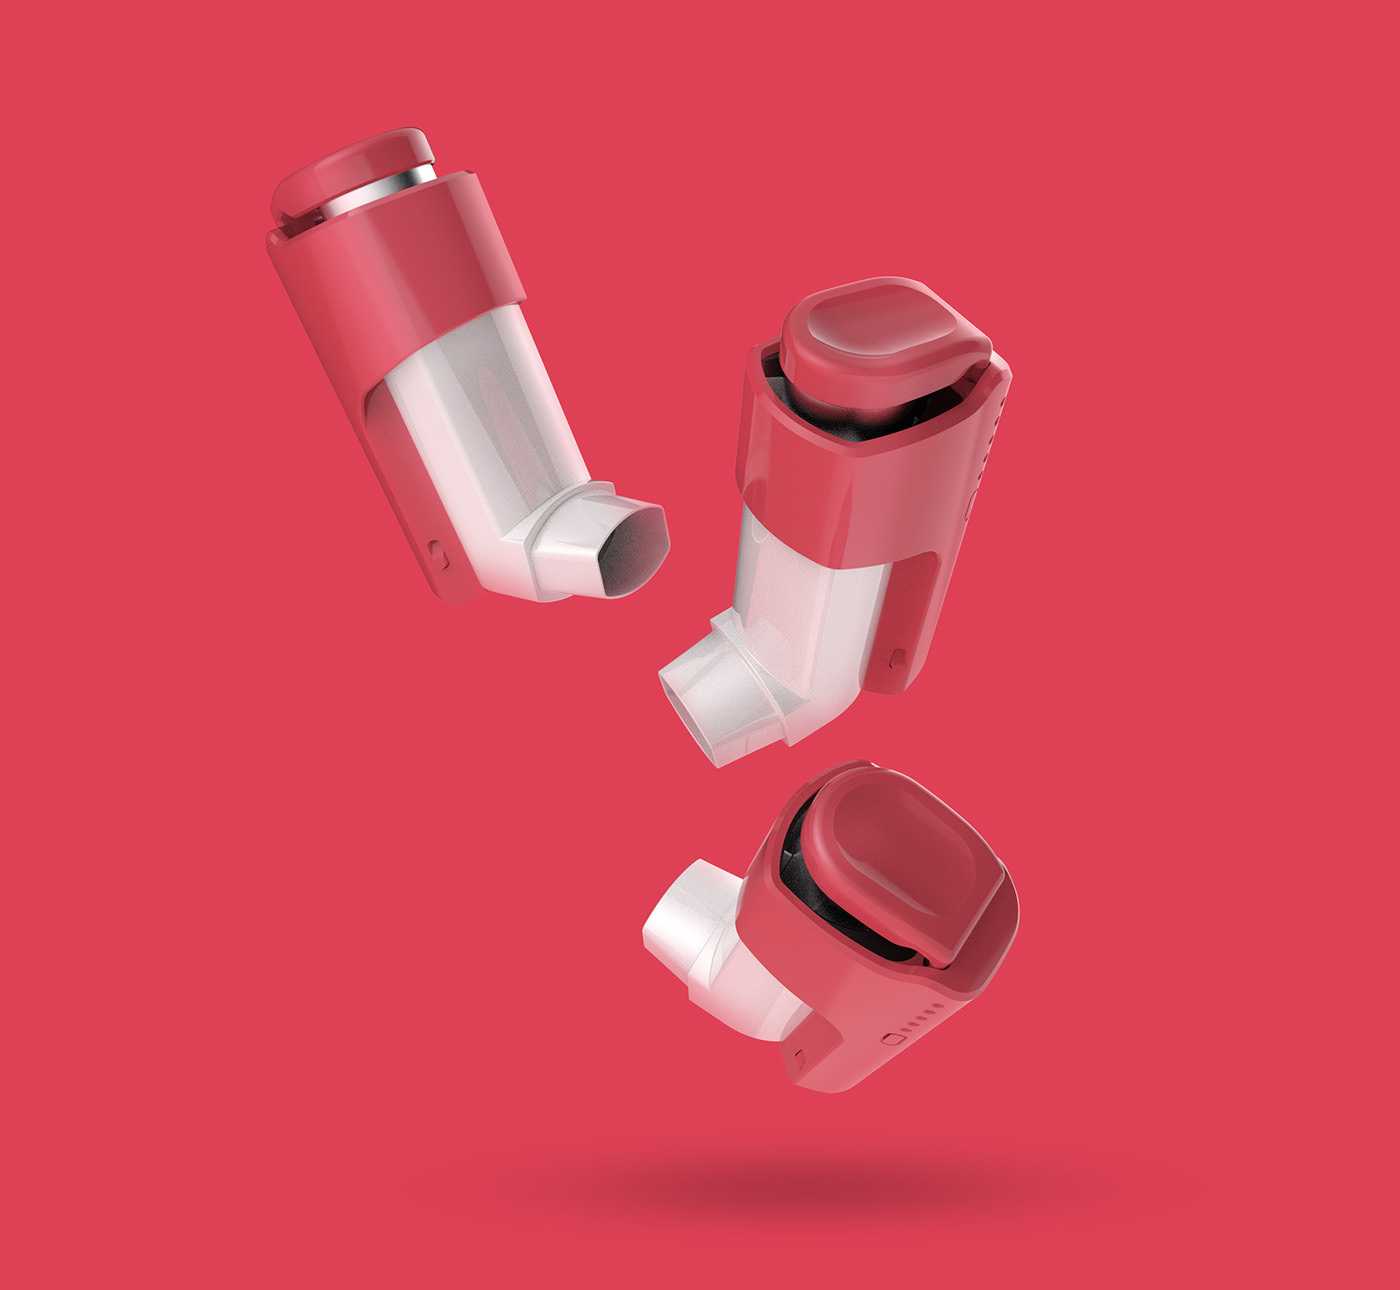 spirocco inhaler Health design device Smart spirometer medical doctor asthma